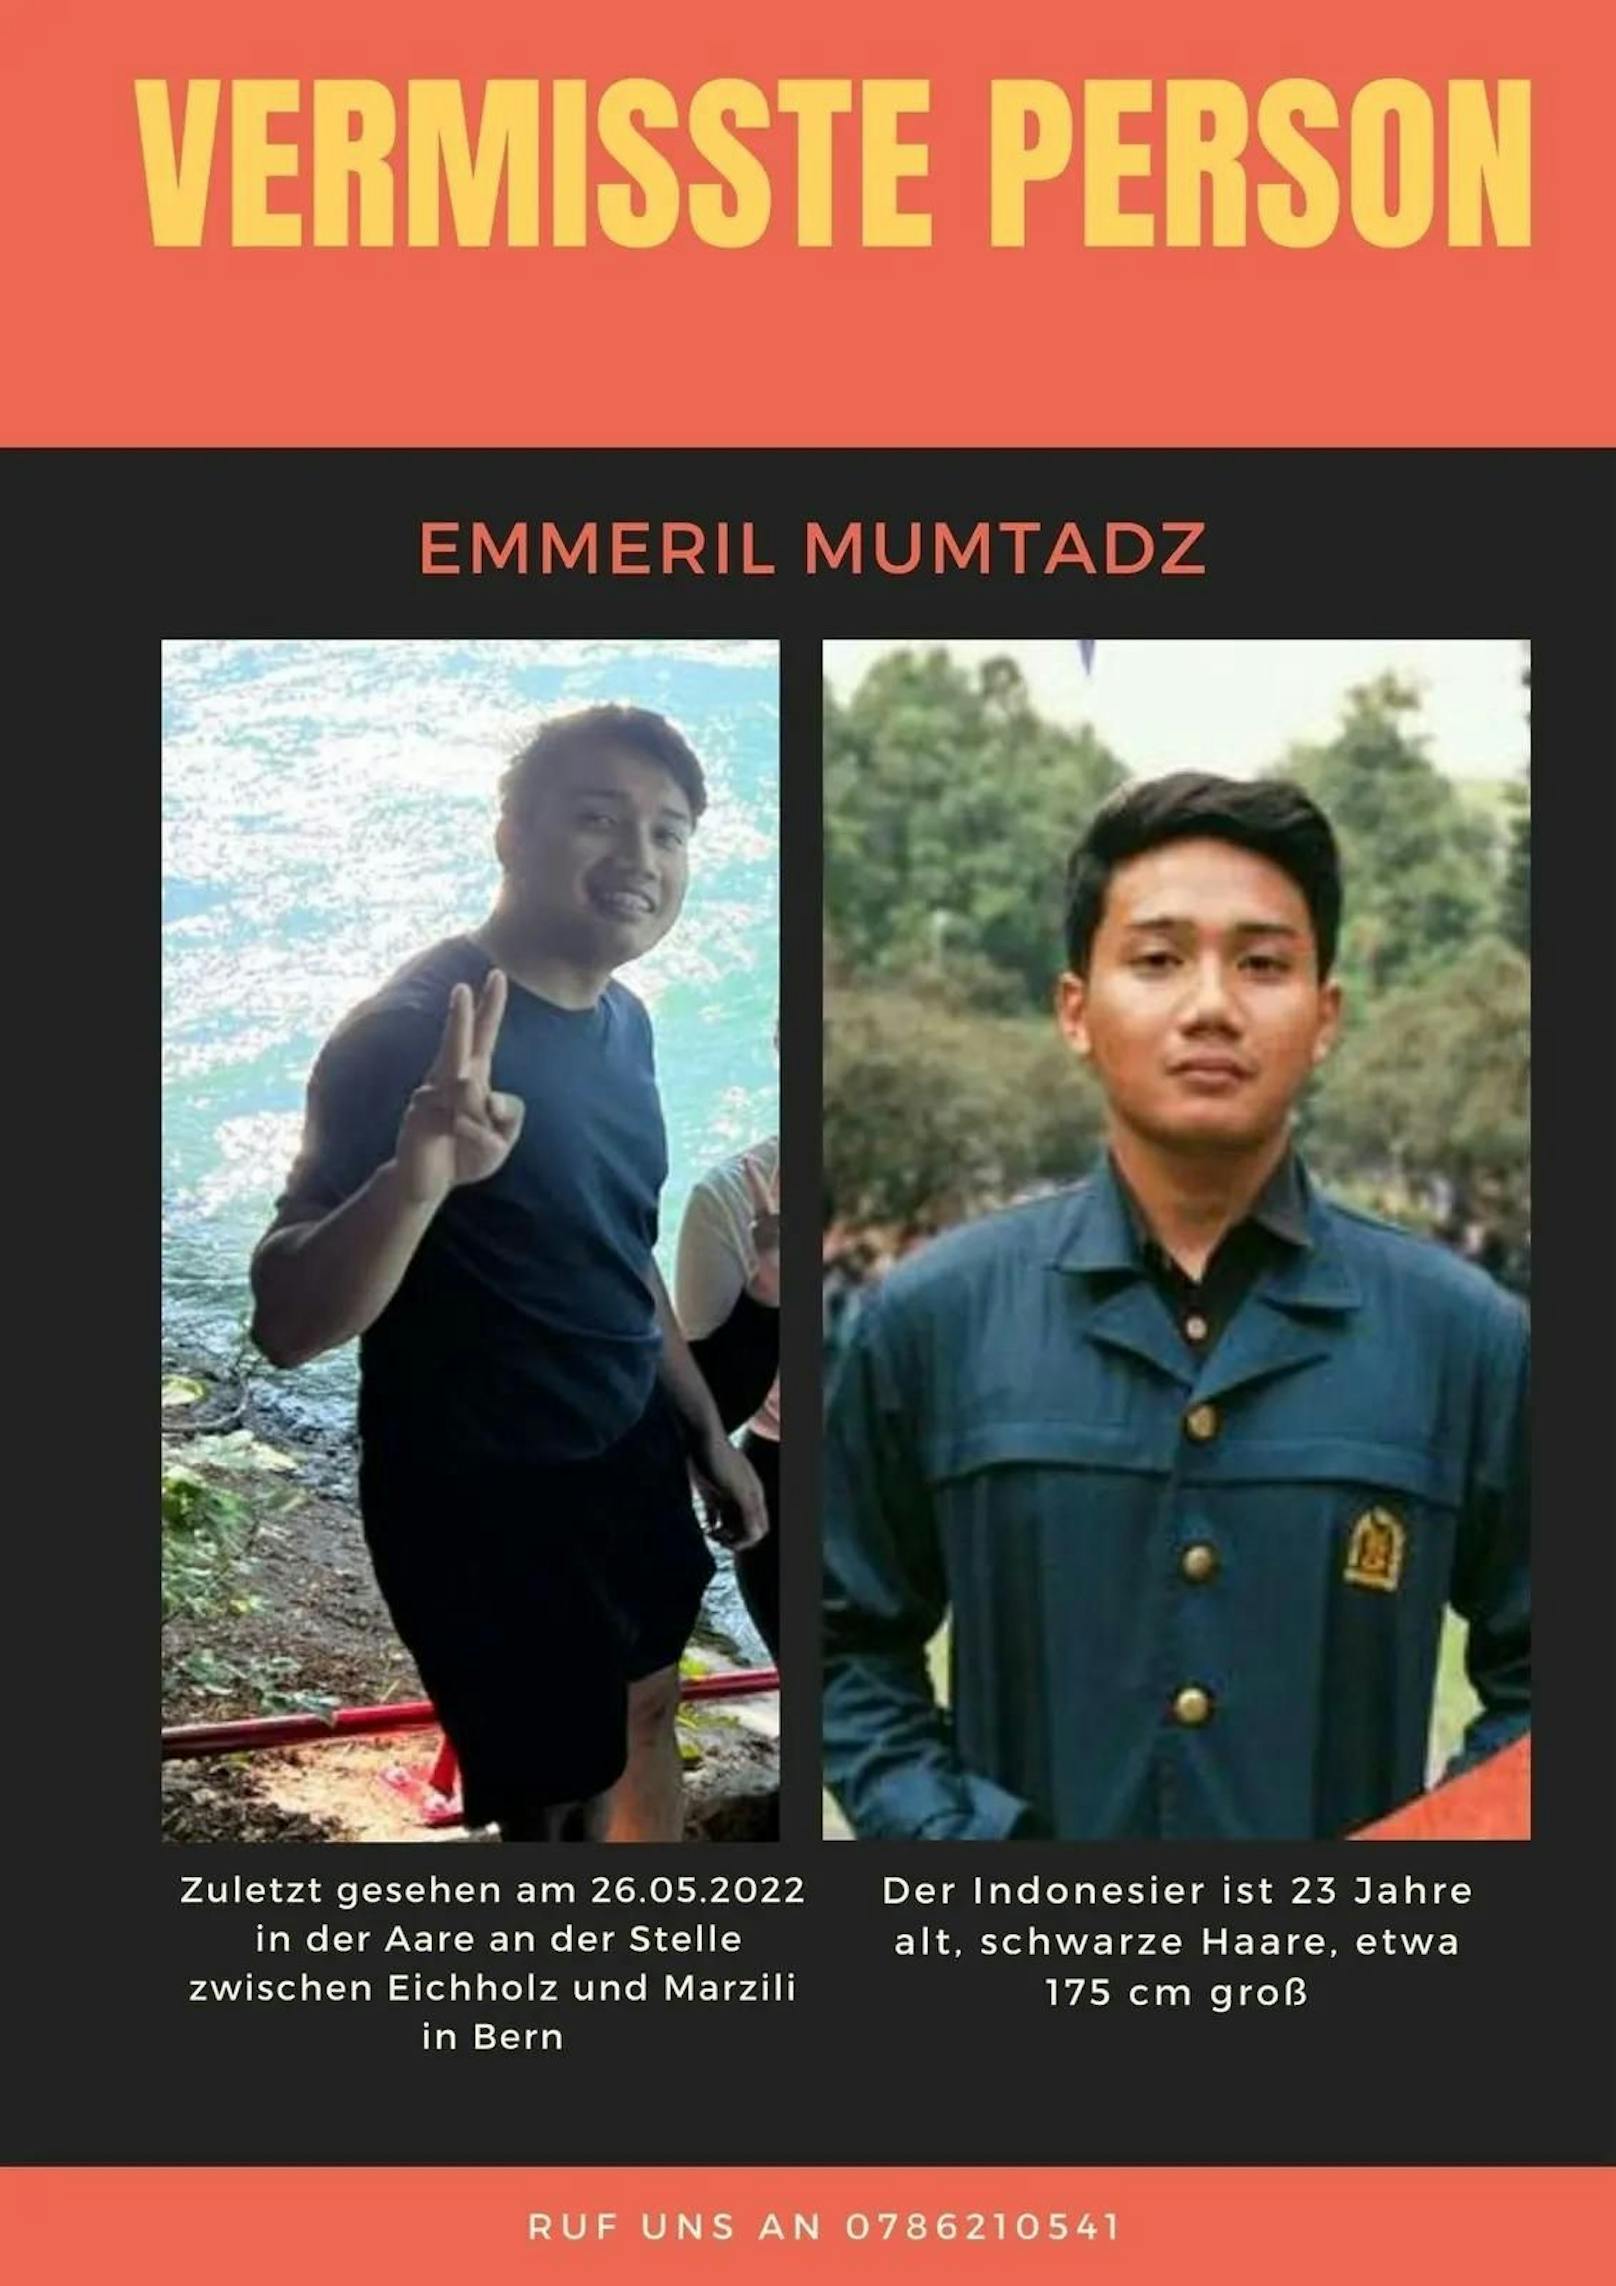 Emmeril Mumtadz (23) wird vermisst. Er trug zum Zeitpunkt seines Verschwindens ein blaues Shirt und schwarze Shorts.